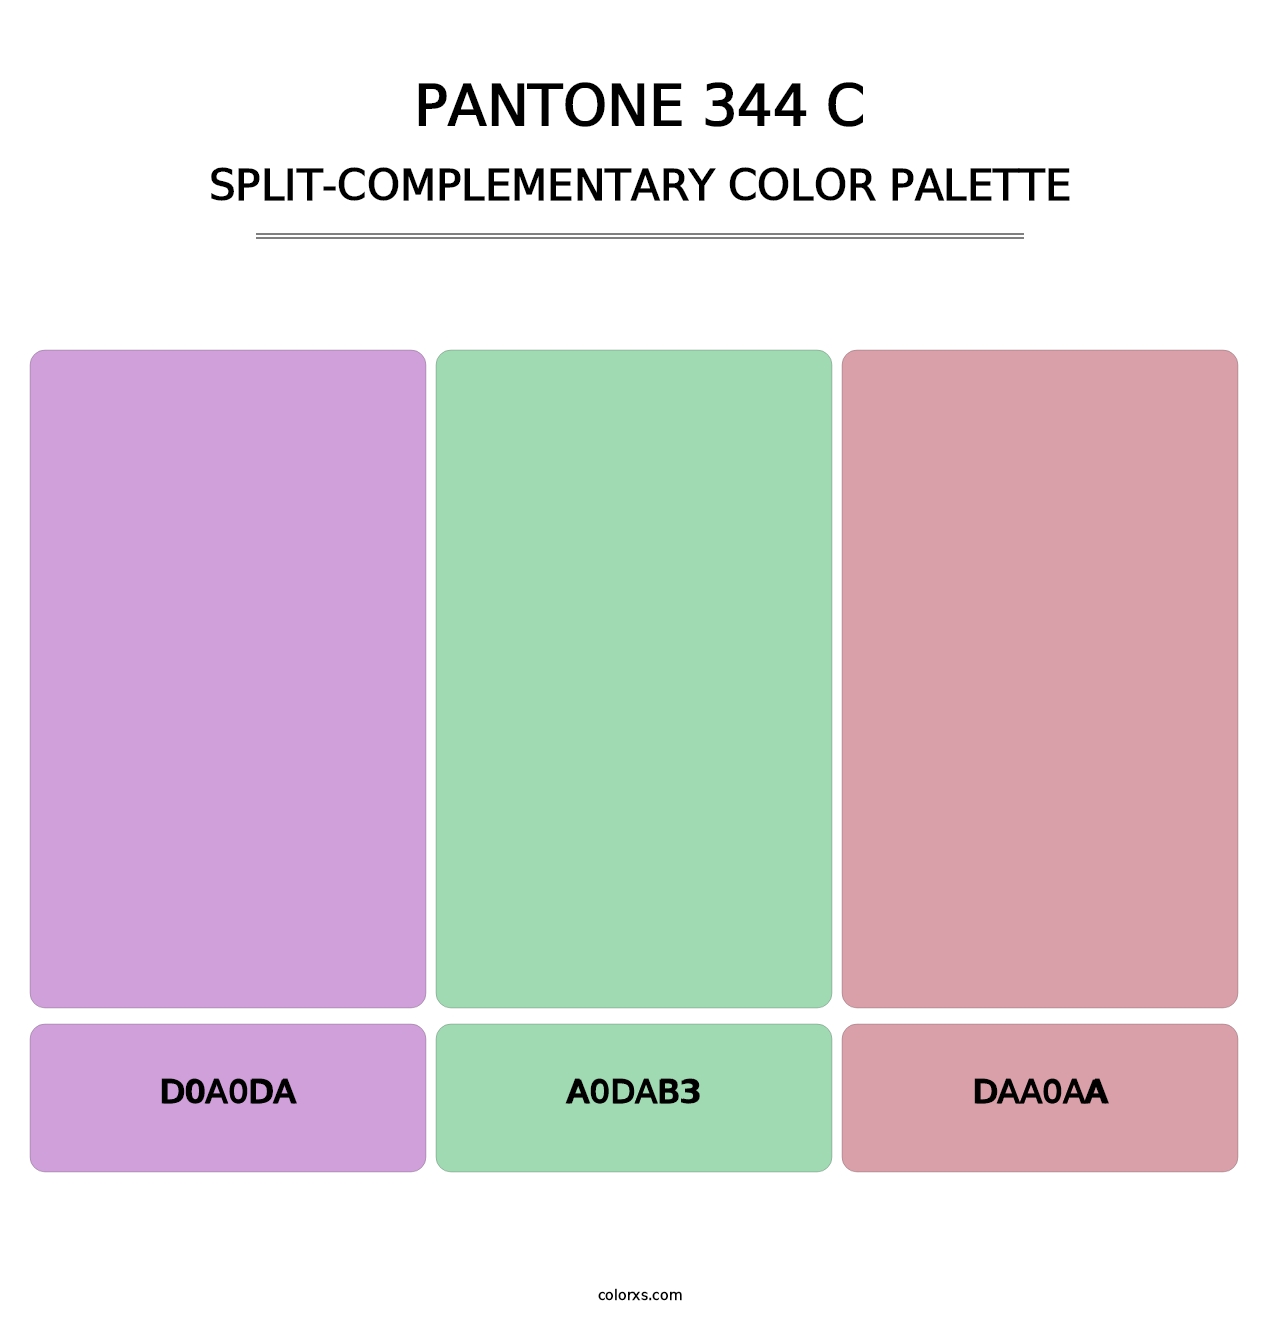 PANTONE 344 C - Split-Complementary Color Palette